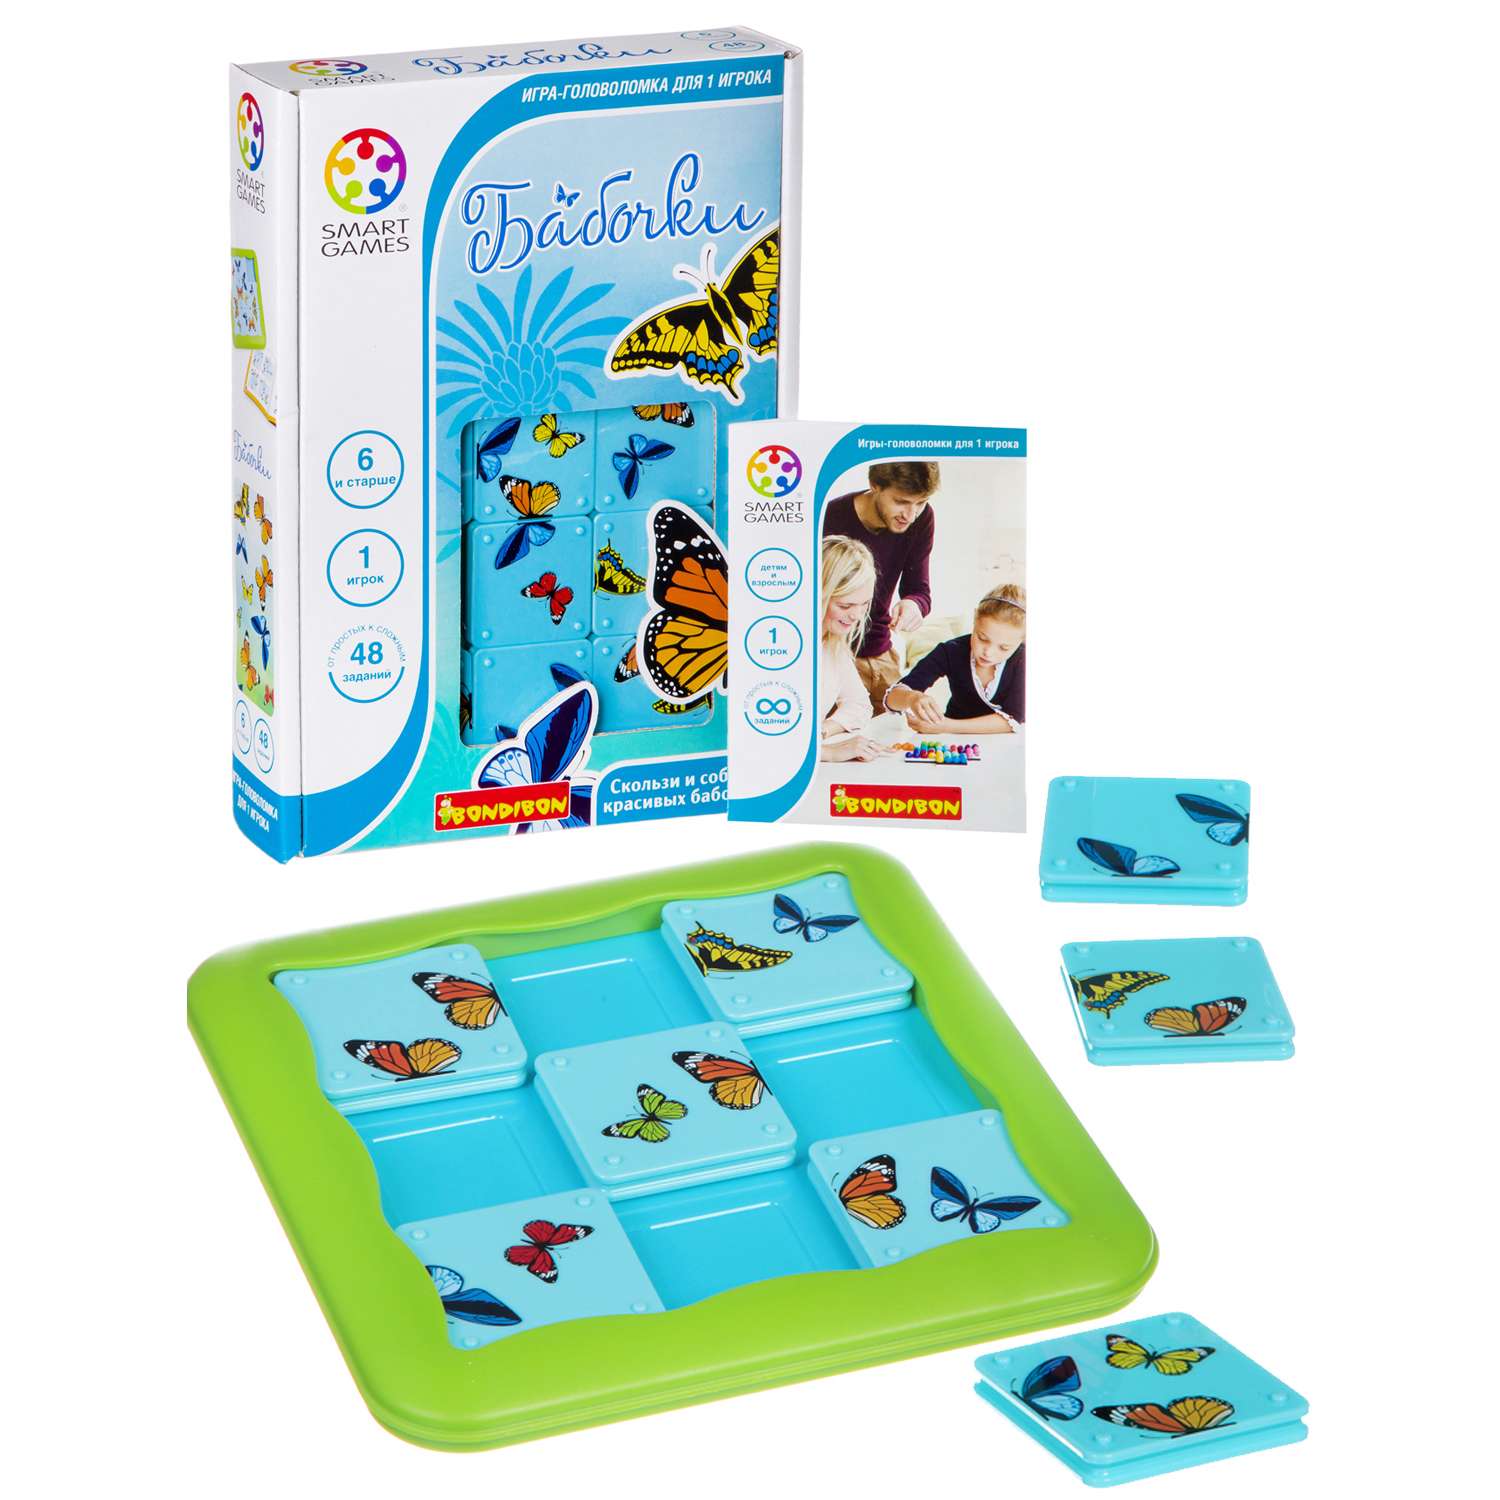 Настольная логическая игра BONDIBON компактная головоломка Бабочки серия Smart Games - фото 3